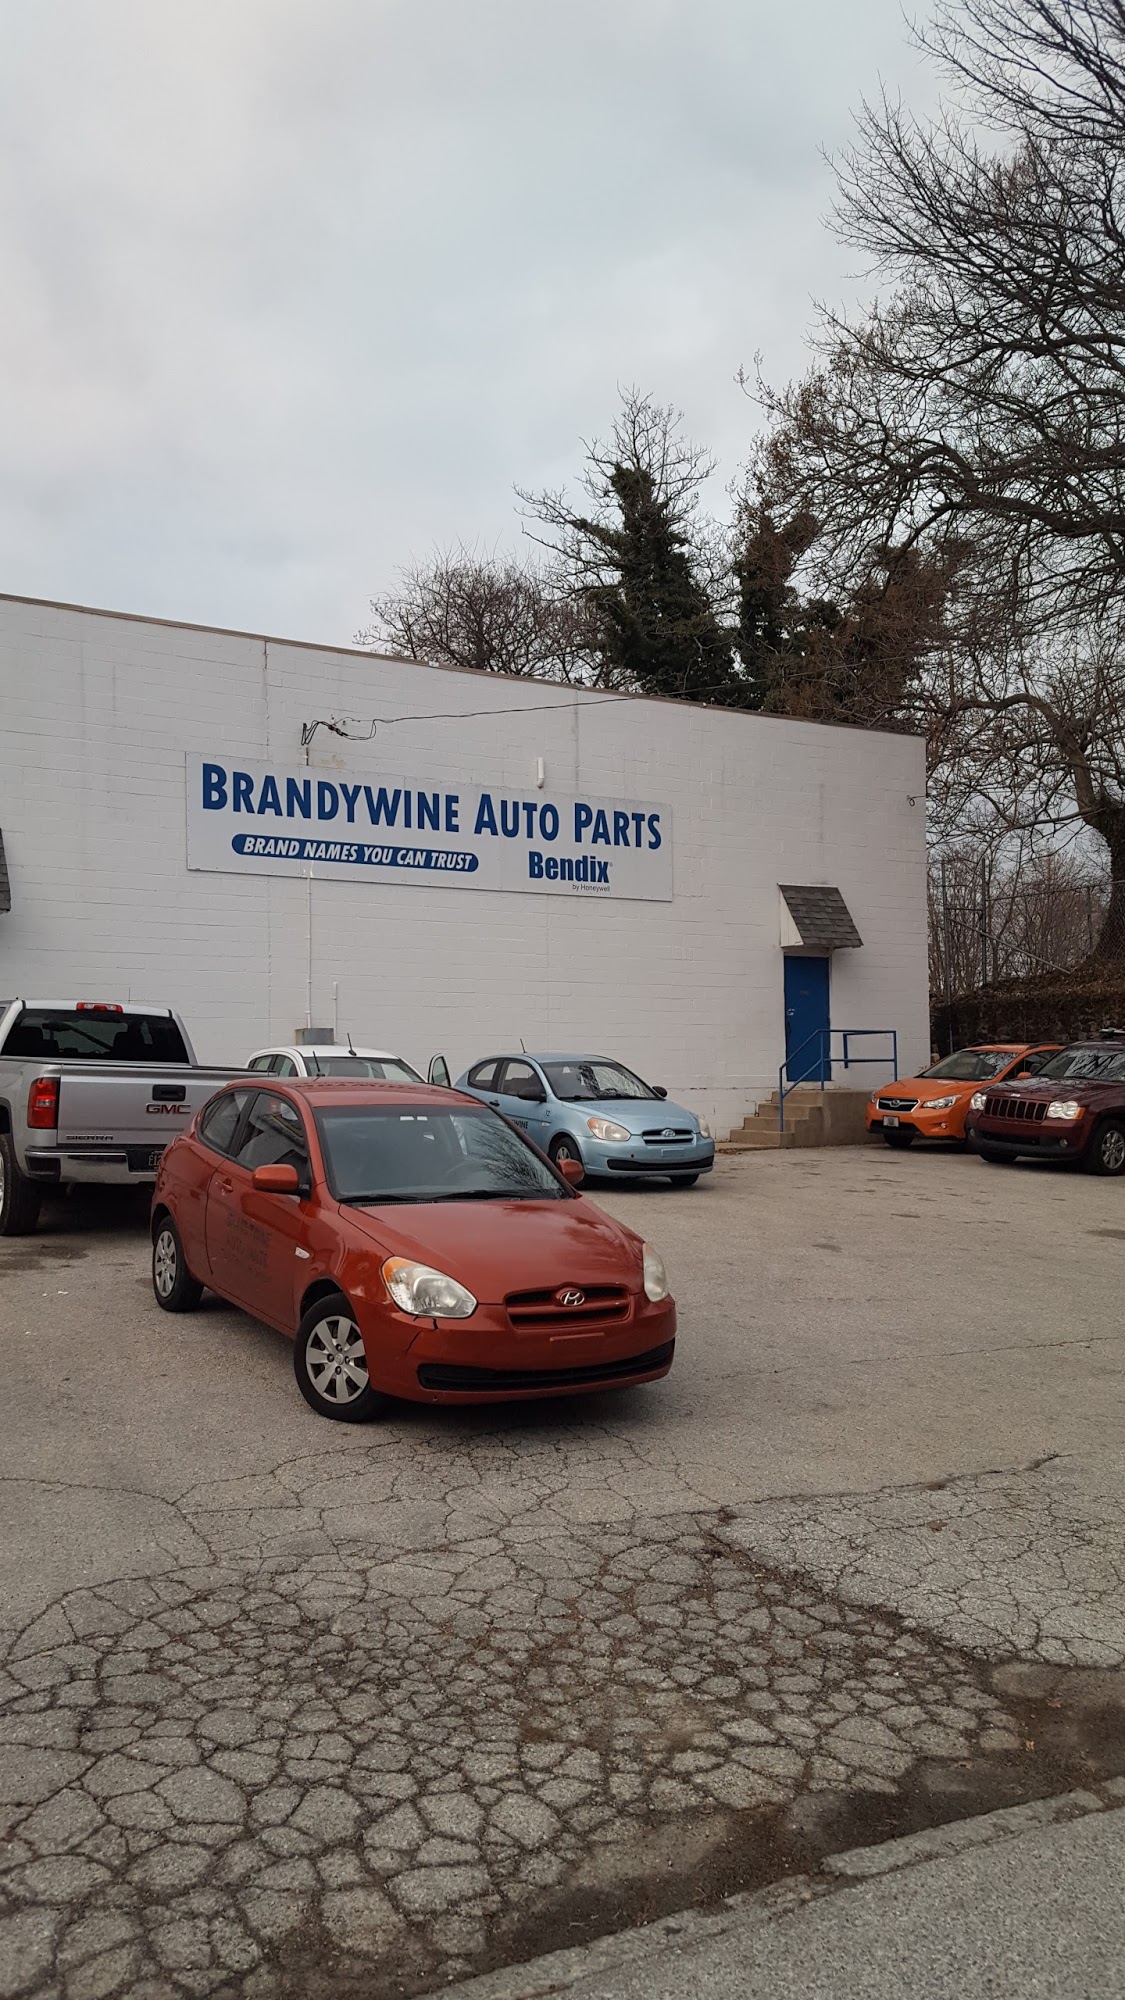 Brandywine Auto Parts